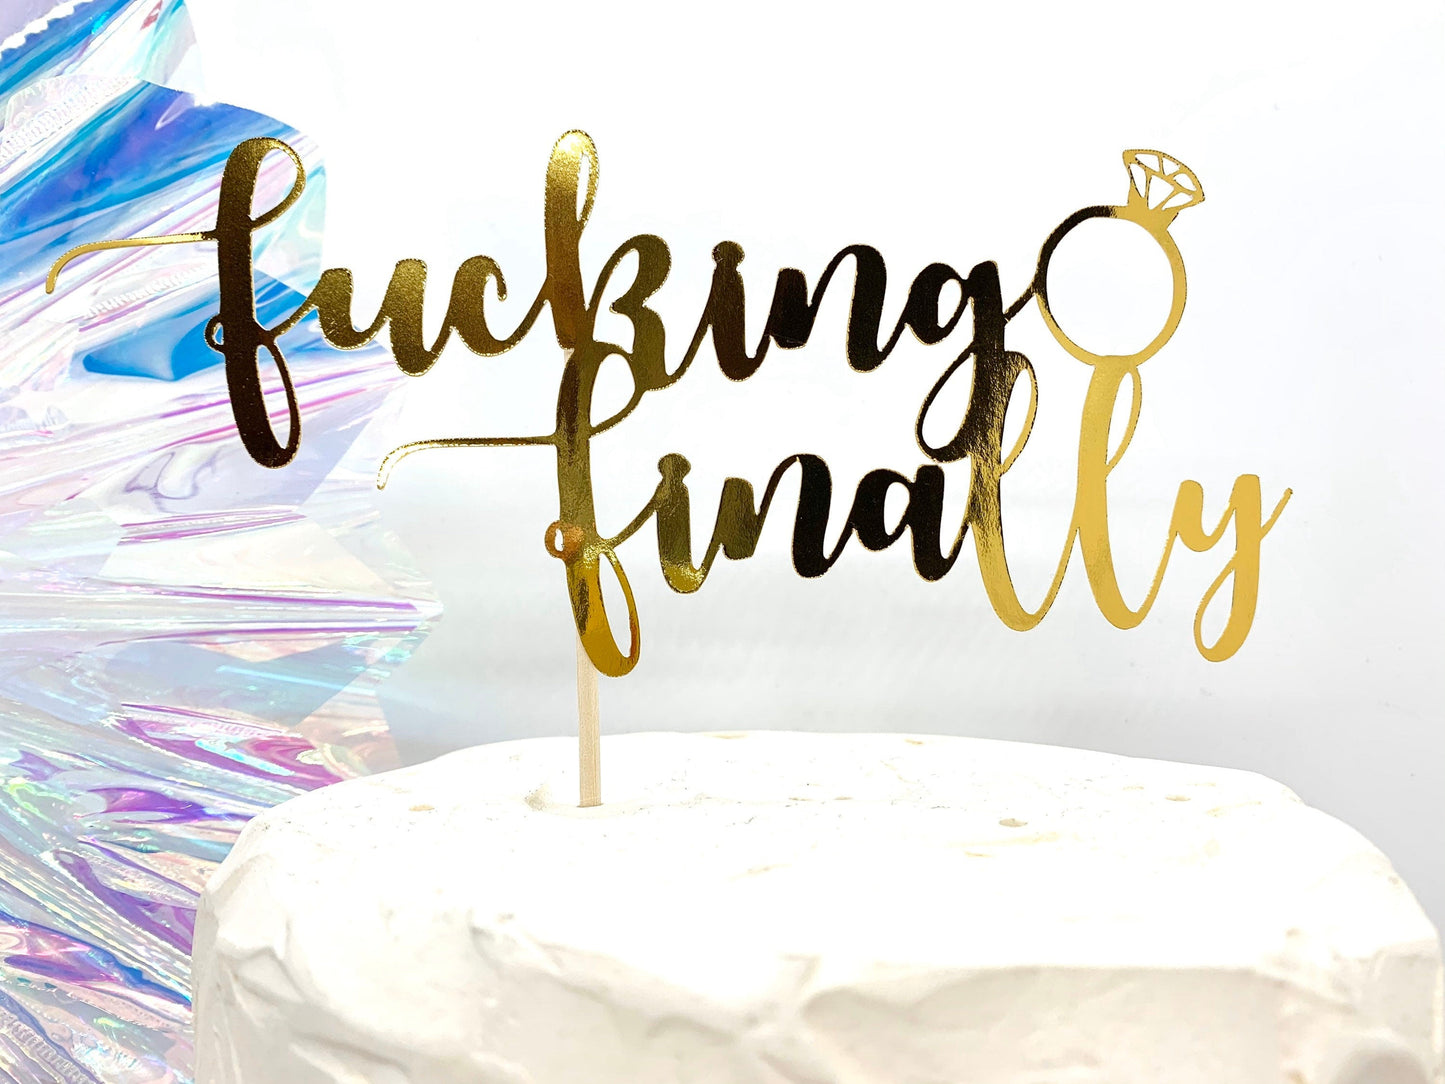 Fucking Finally Engaged Engagement Ring Cake Topper - Resplendent Aurora